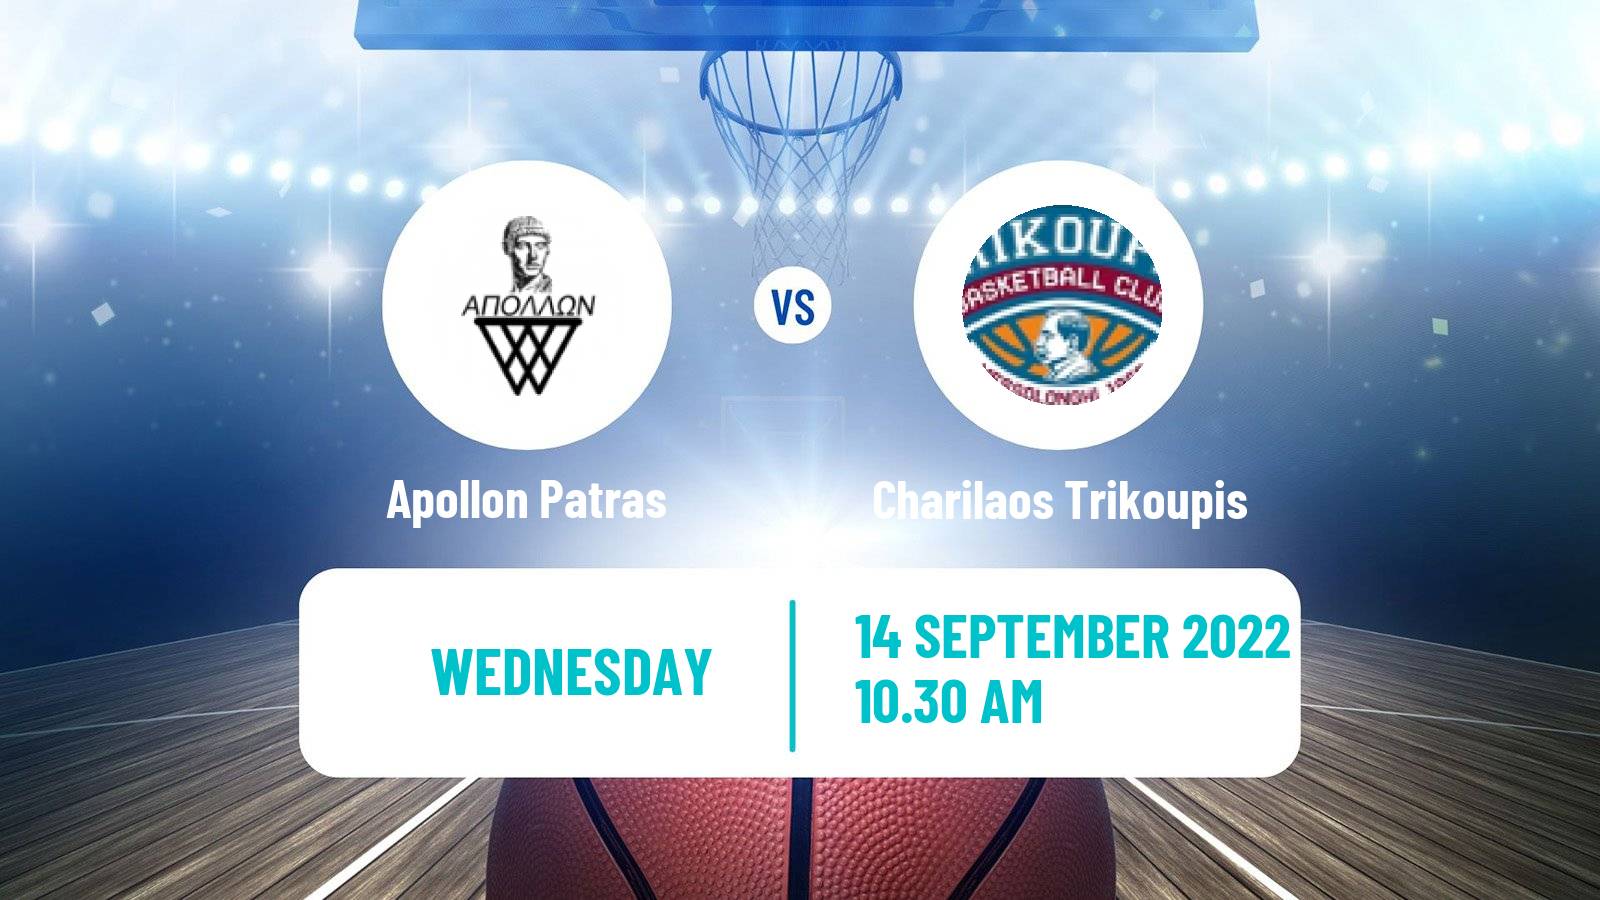 Basketball Club Friendly Basketball Apollon Patras - Charilaos Trikoupis